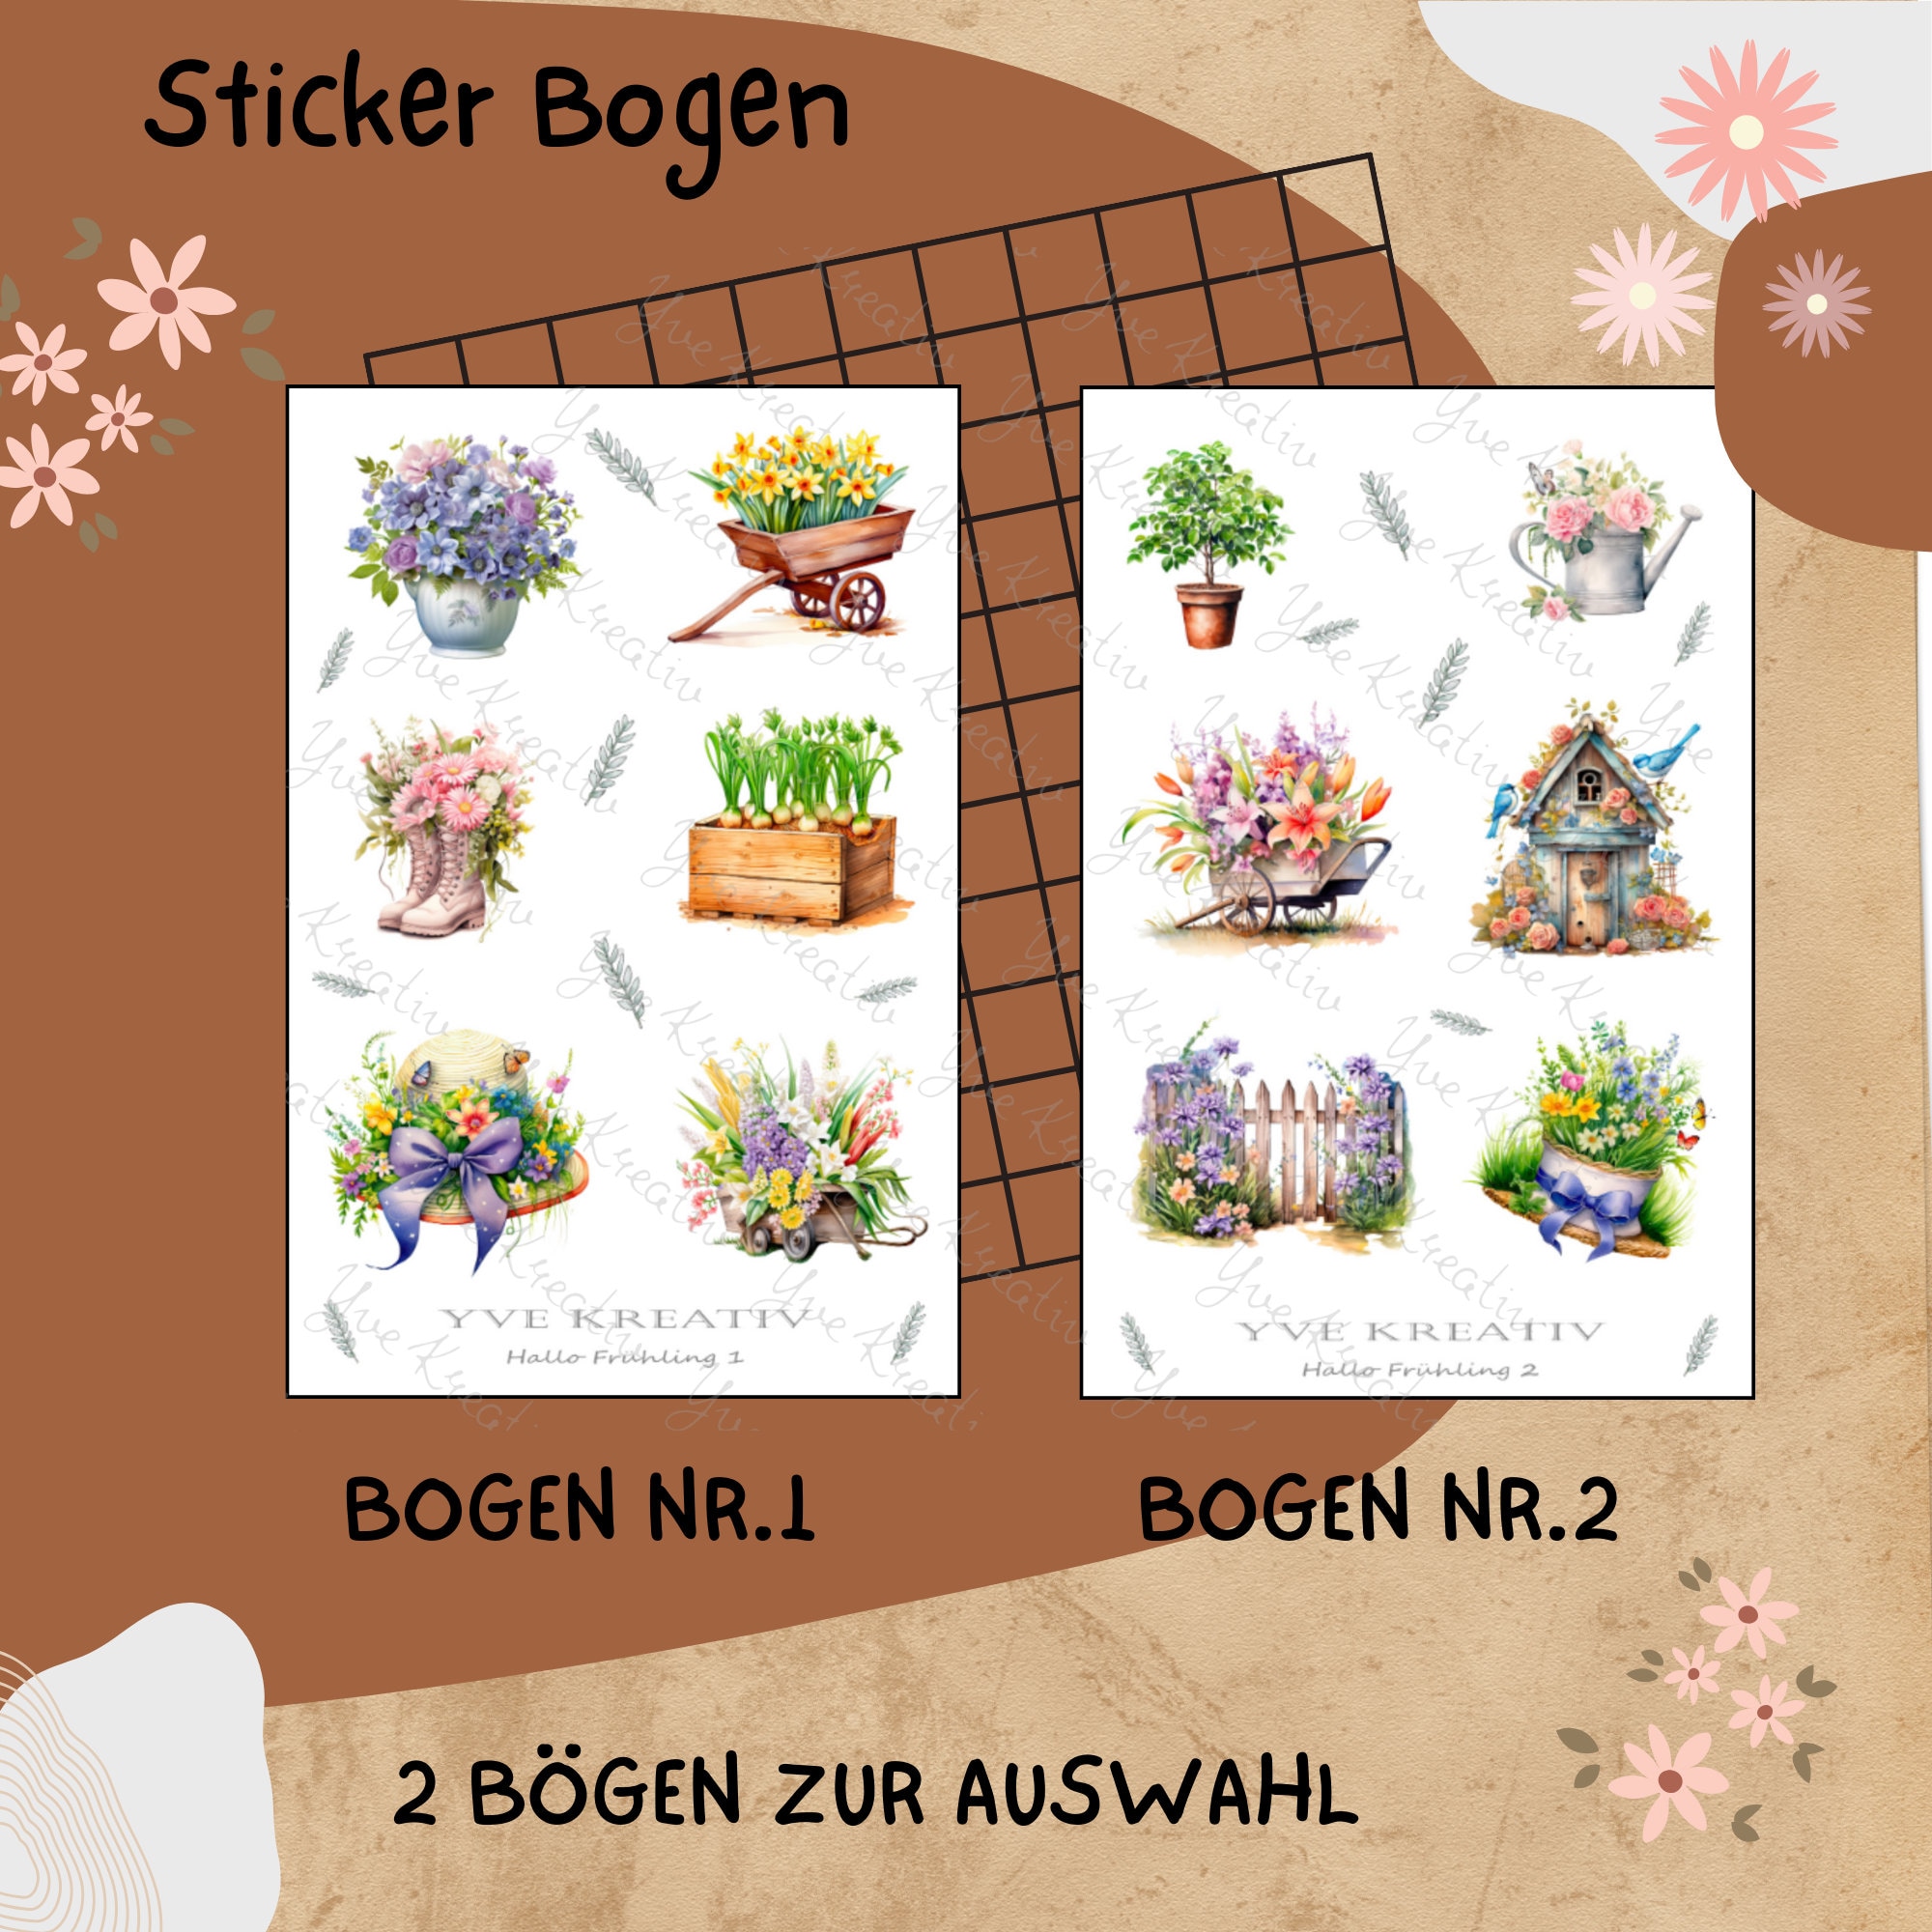 Sticker Bogen "Frühling Garten Pflanzen" | Sticker Set - Aufkleber 2 Stickerbogen zur Auswahl in Weiß - Transparent - Matt - Glanz